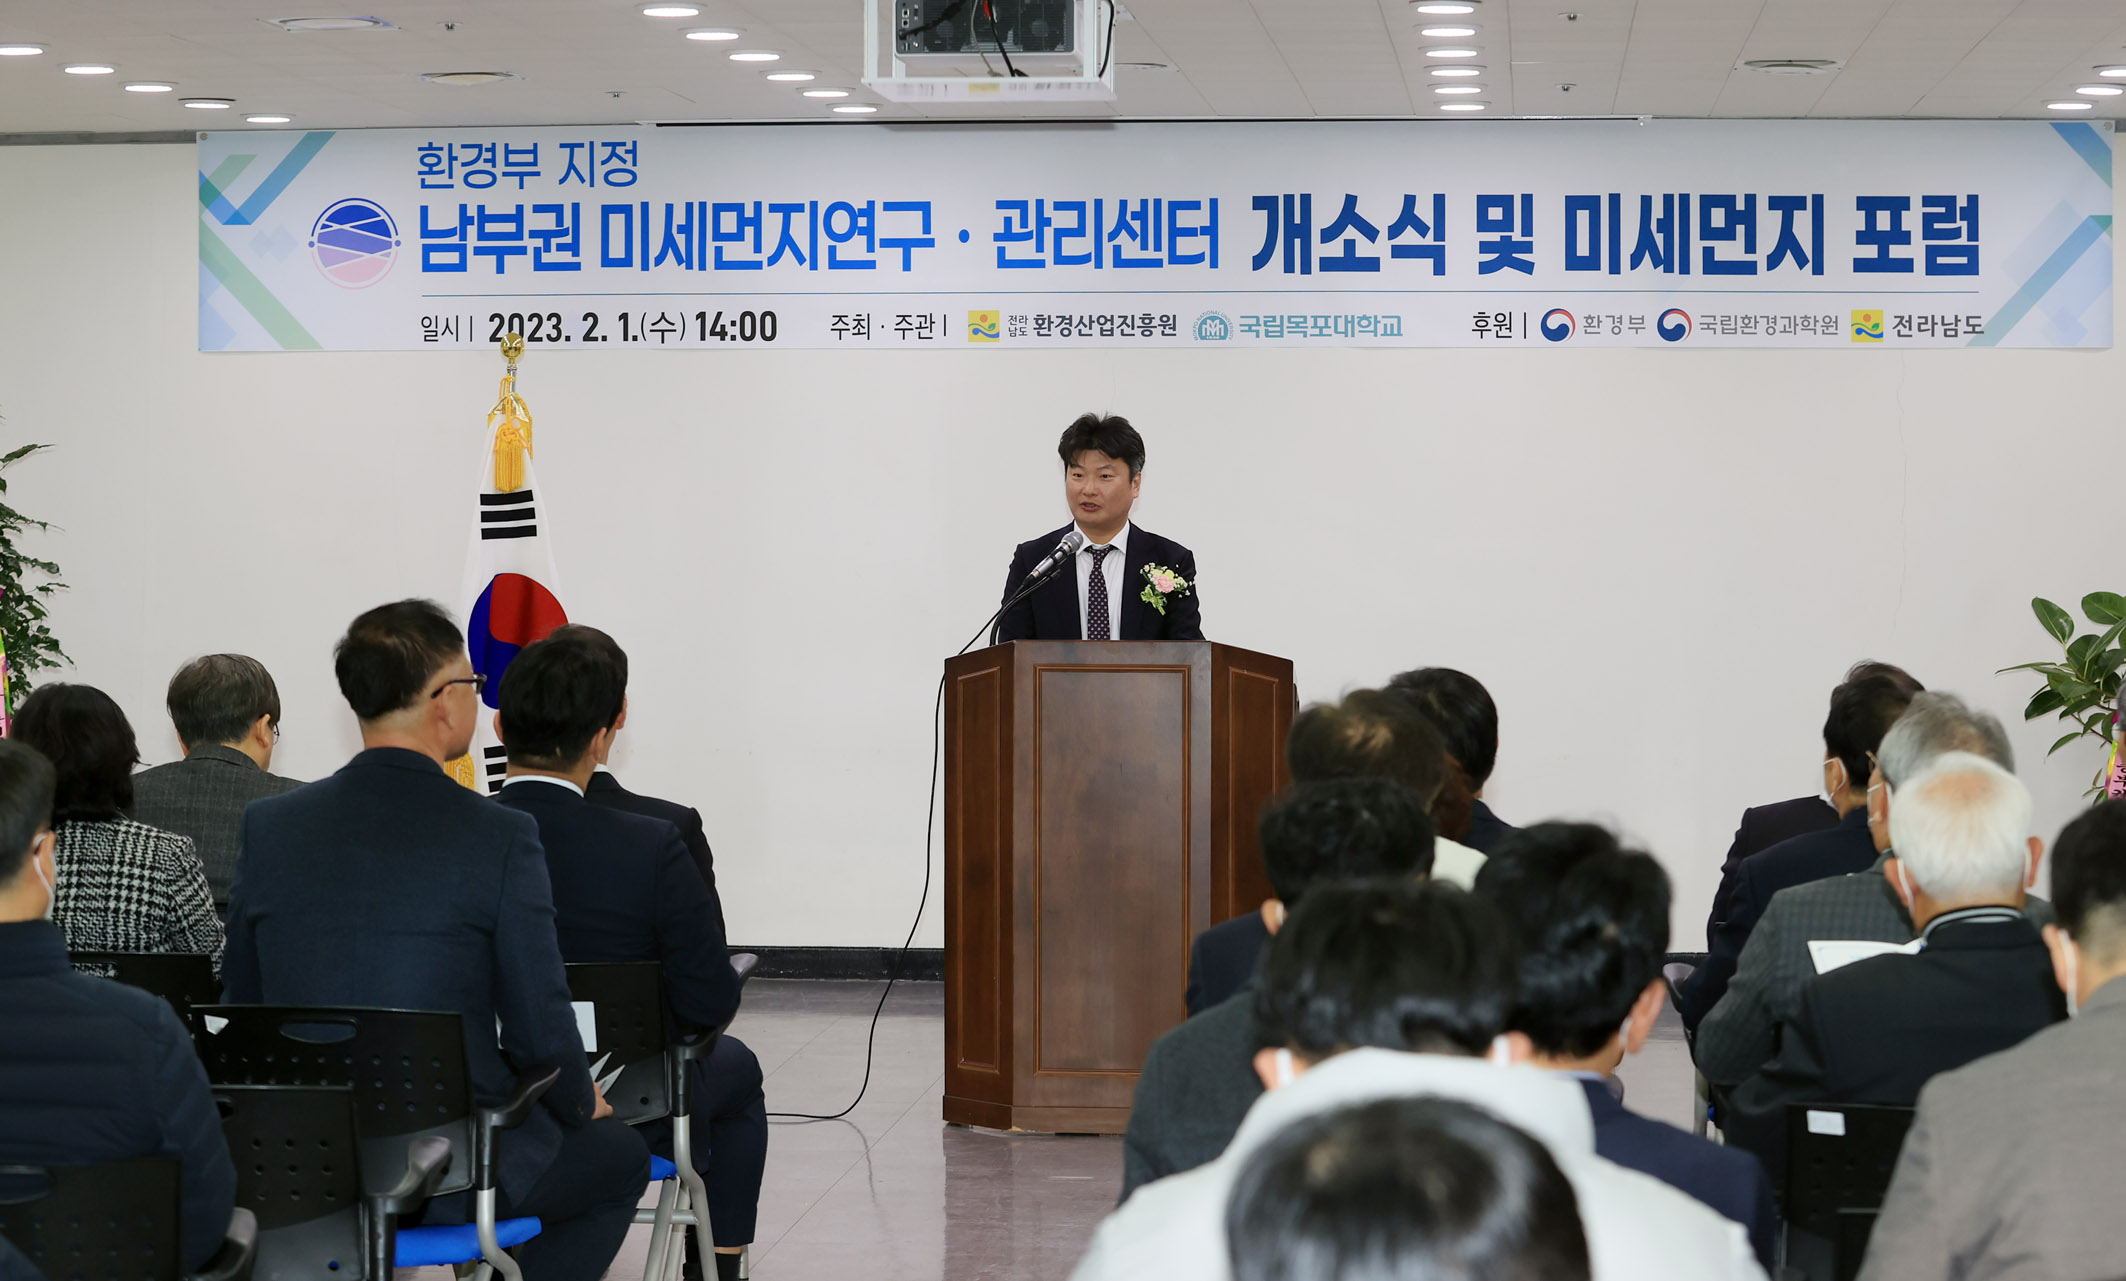 환경부 지정, ‘남부권 미세먼지연구관리센터’ 개소식 개최2